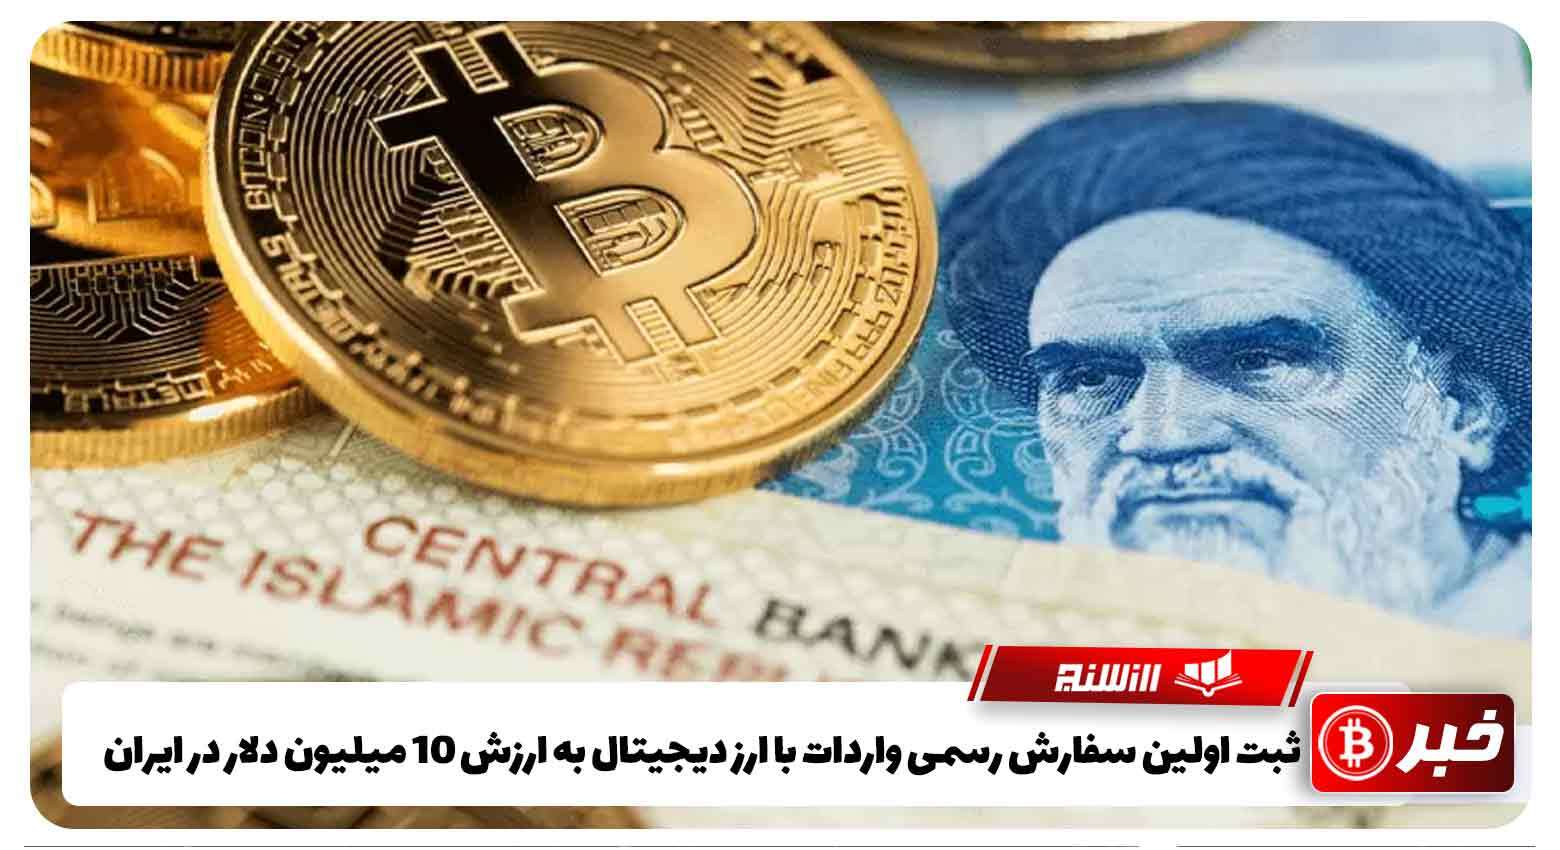 ثبت اولین سفارش رسمی واردات با ارز دیجیتال به ارزش 10 میلیون دلار در ایران